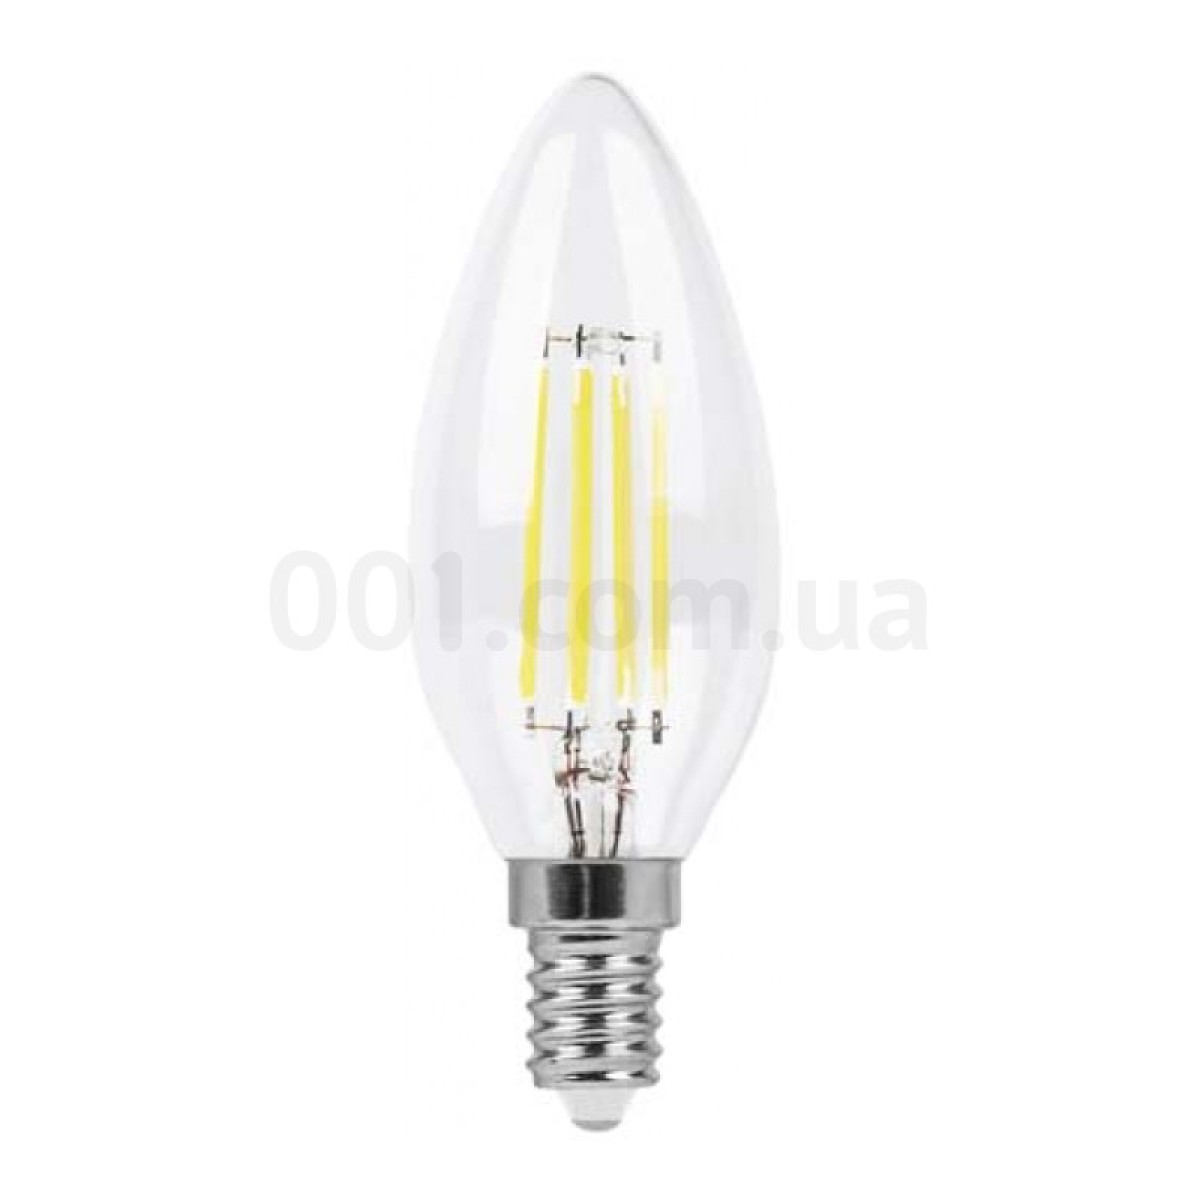 Светодиодная лампа LB-58 C37 (свеча) филамент 4Вт 4000K E14, Feron 98_98.jpg